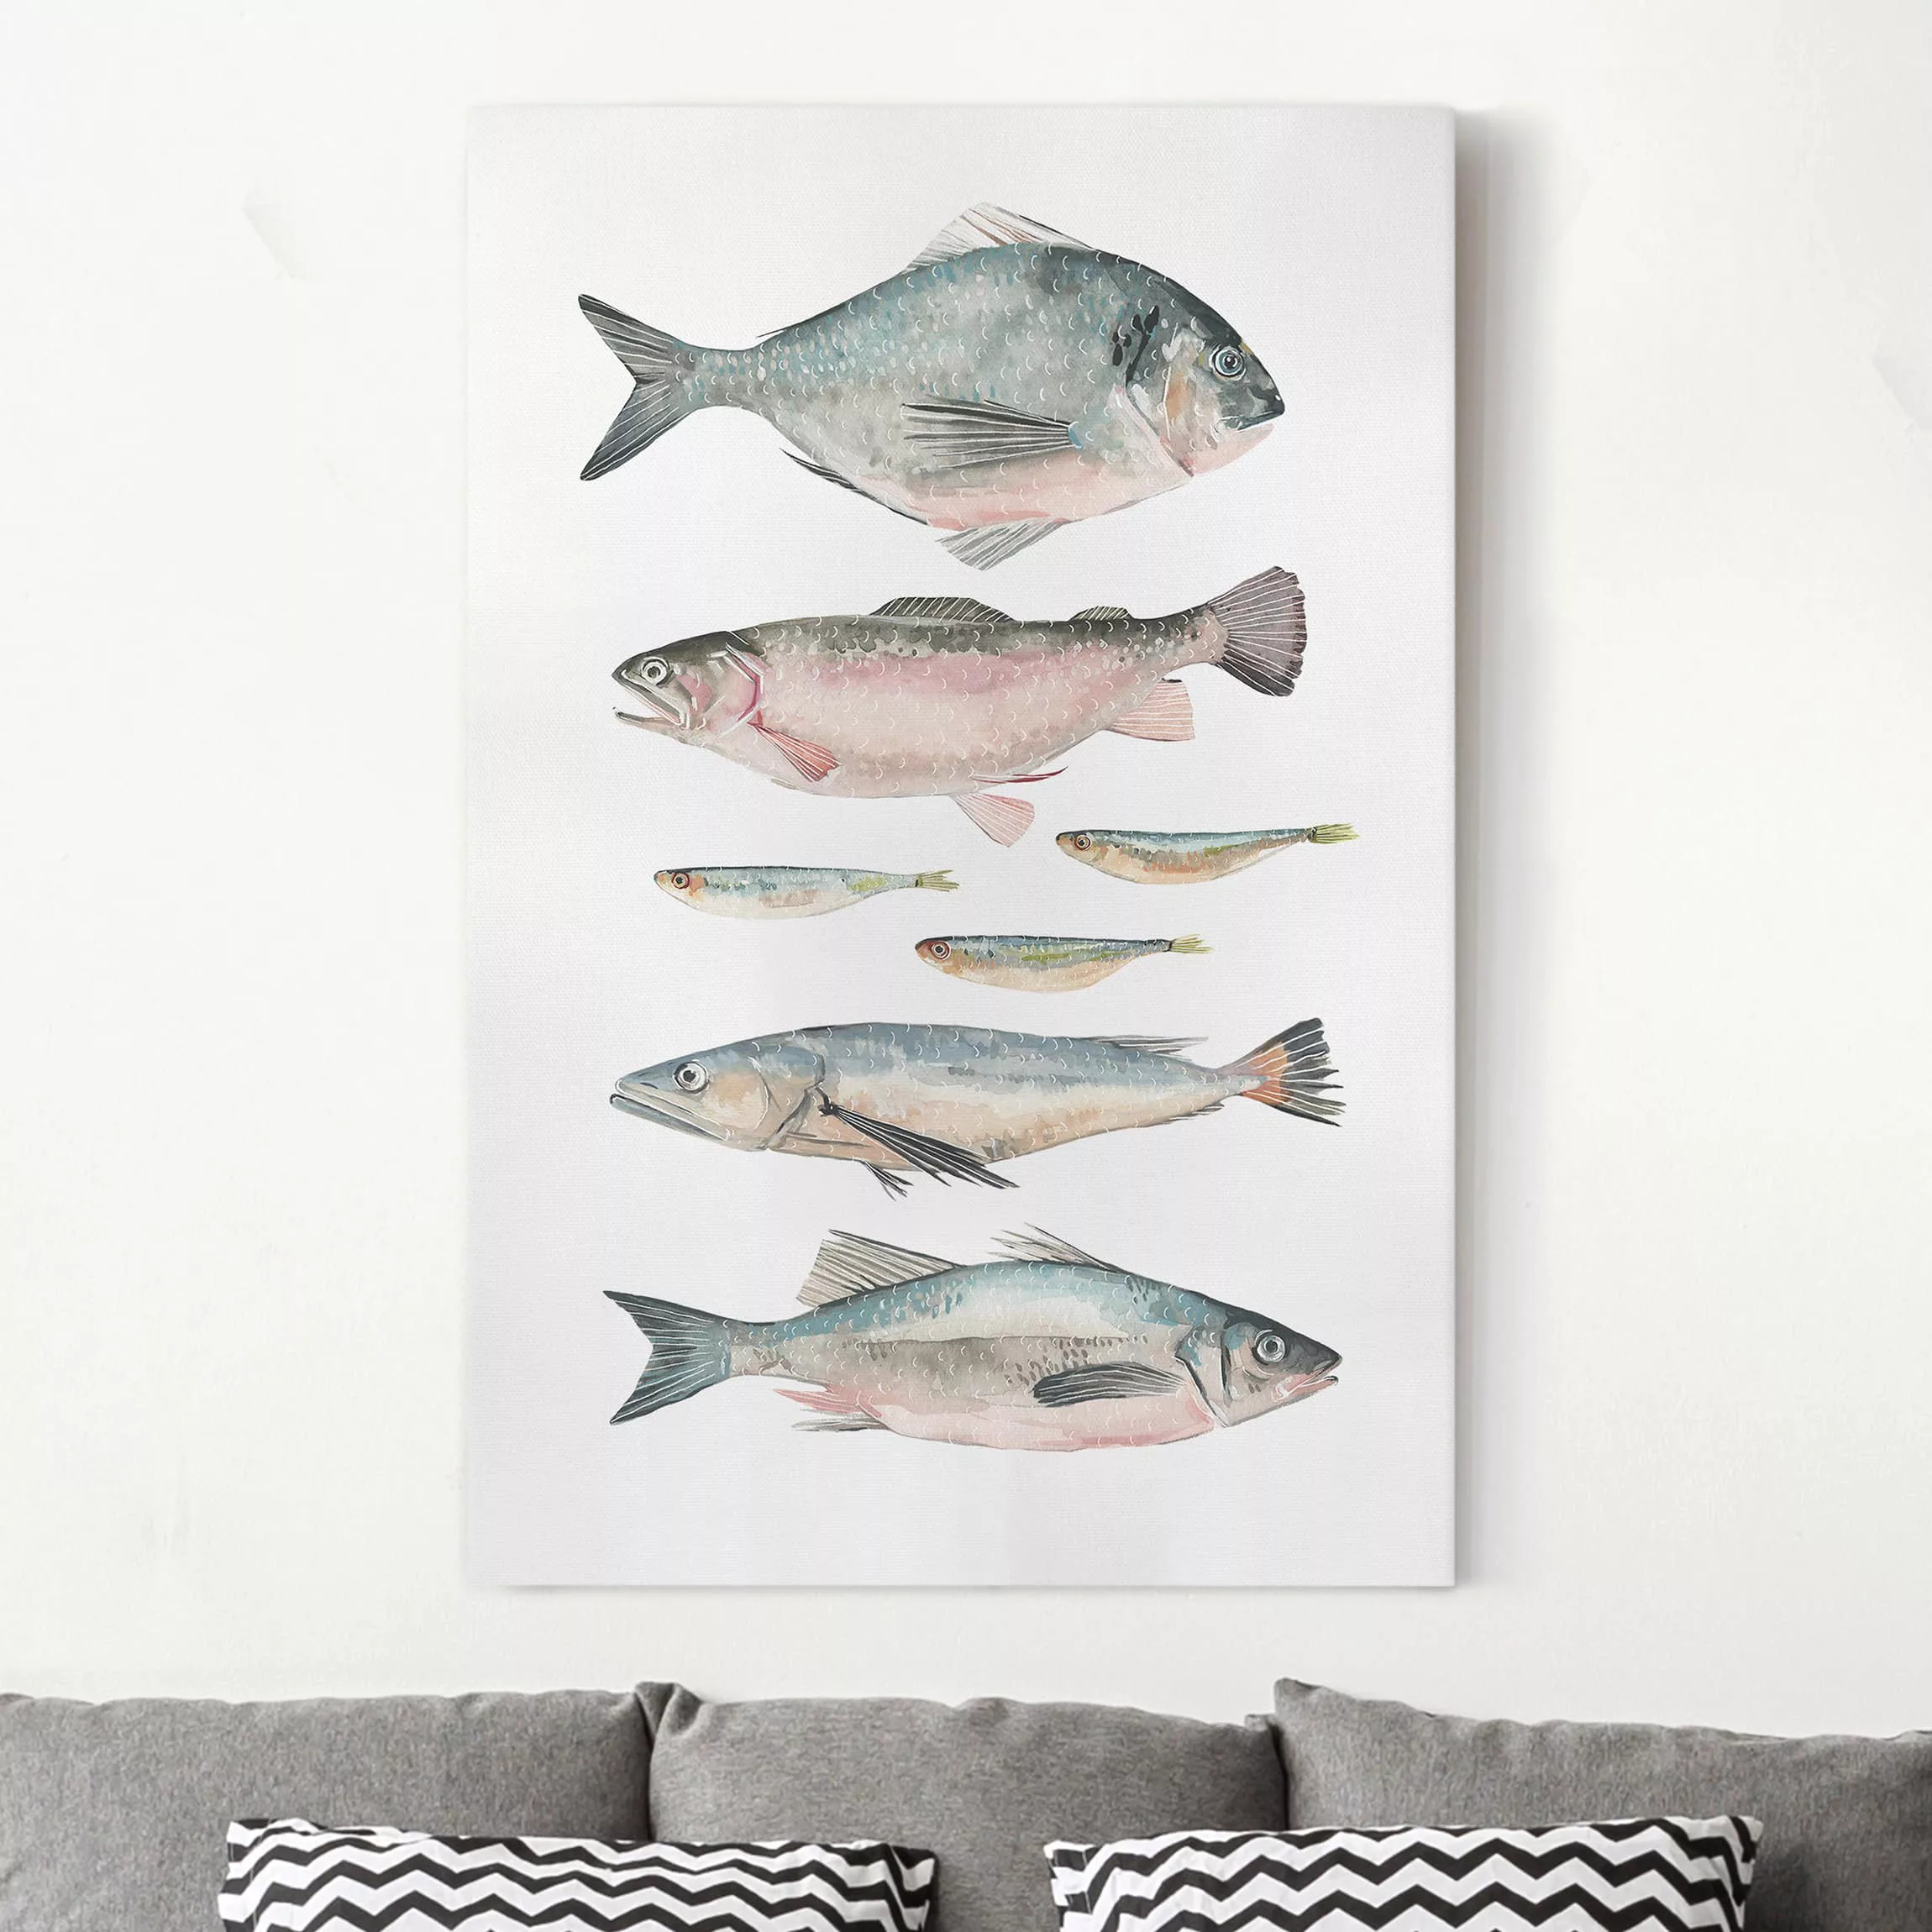 Leinwandbild Tiere - Hochformat Sieben Fische in Aquarell II günstig online kaufen